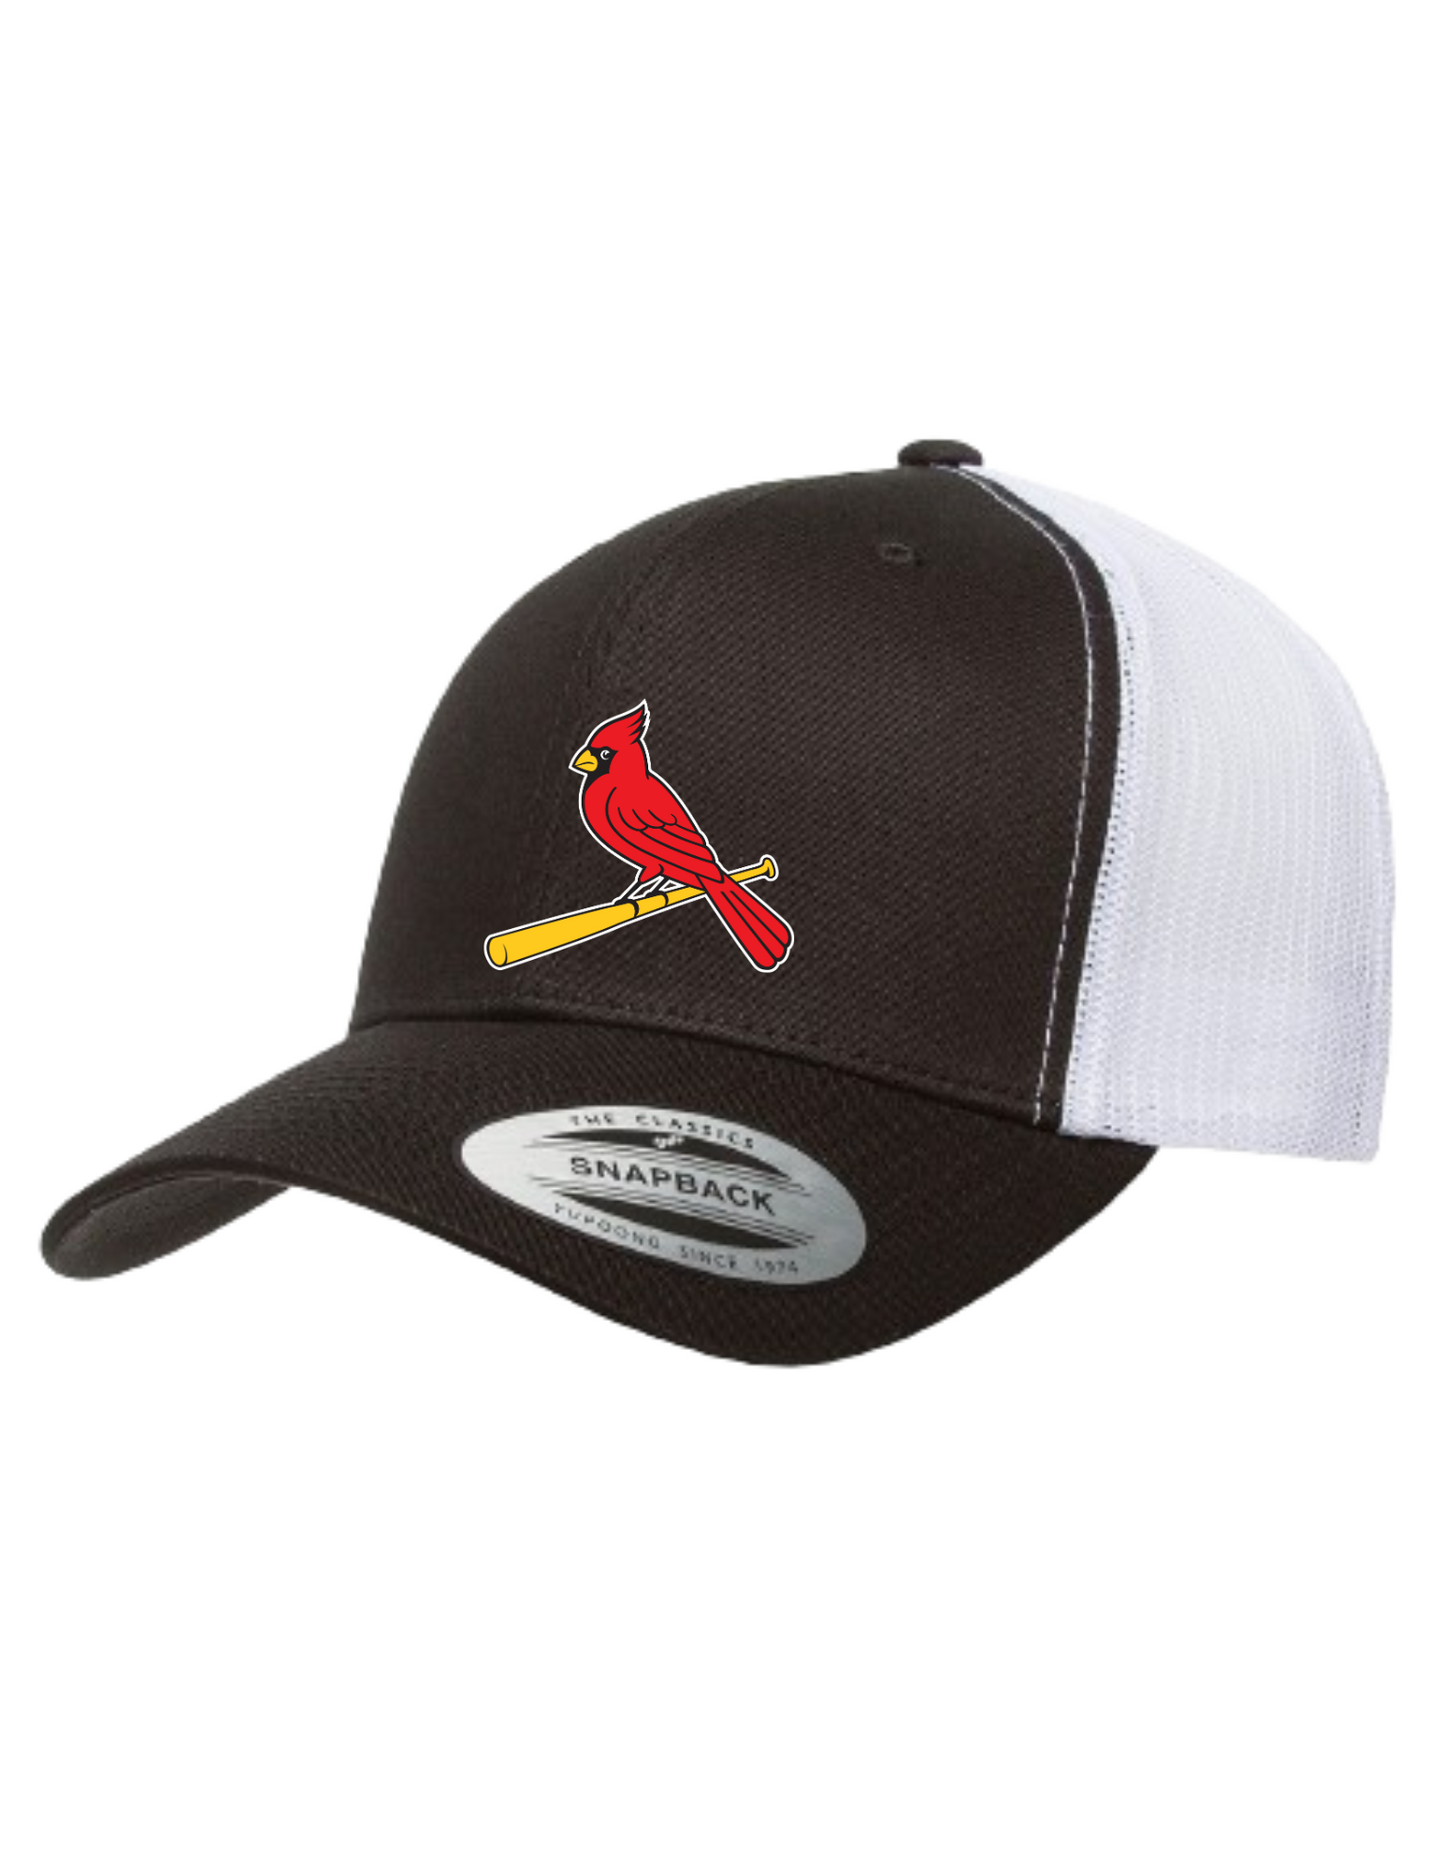 Cardinal Bird Trucker Hat